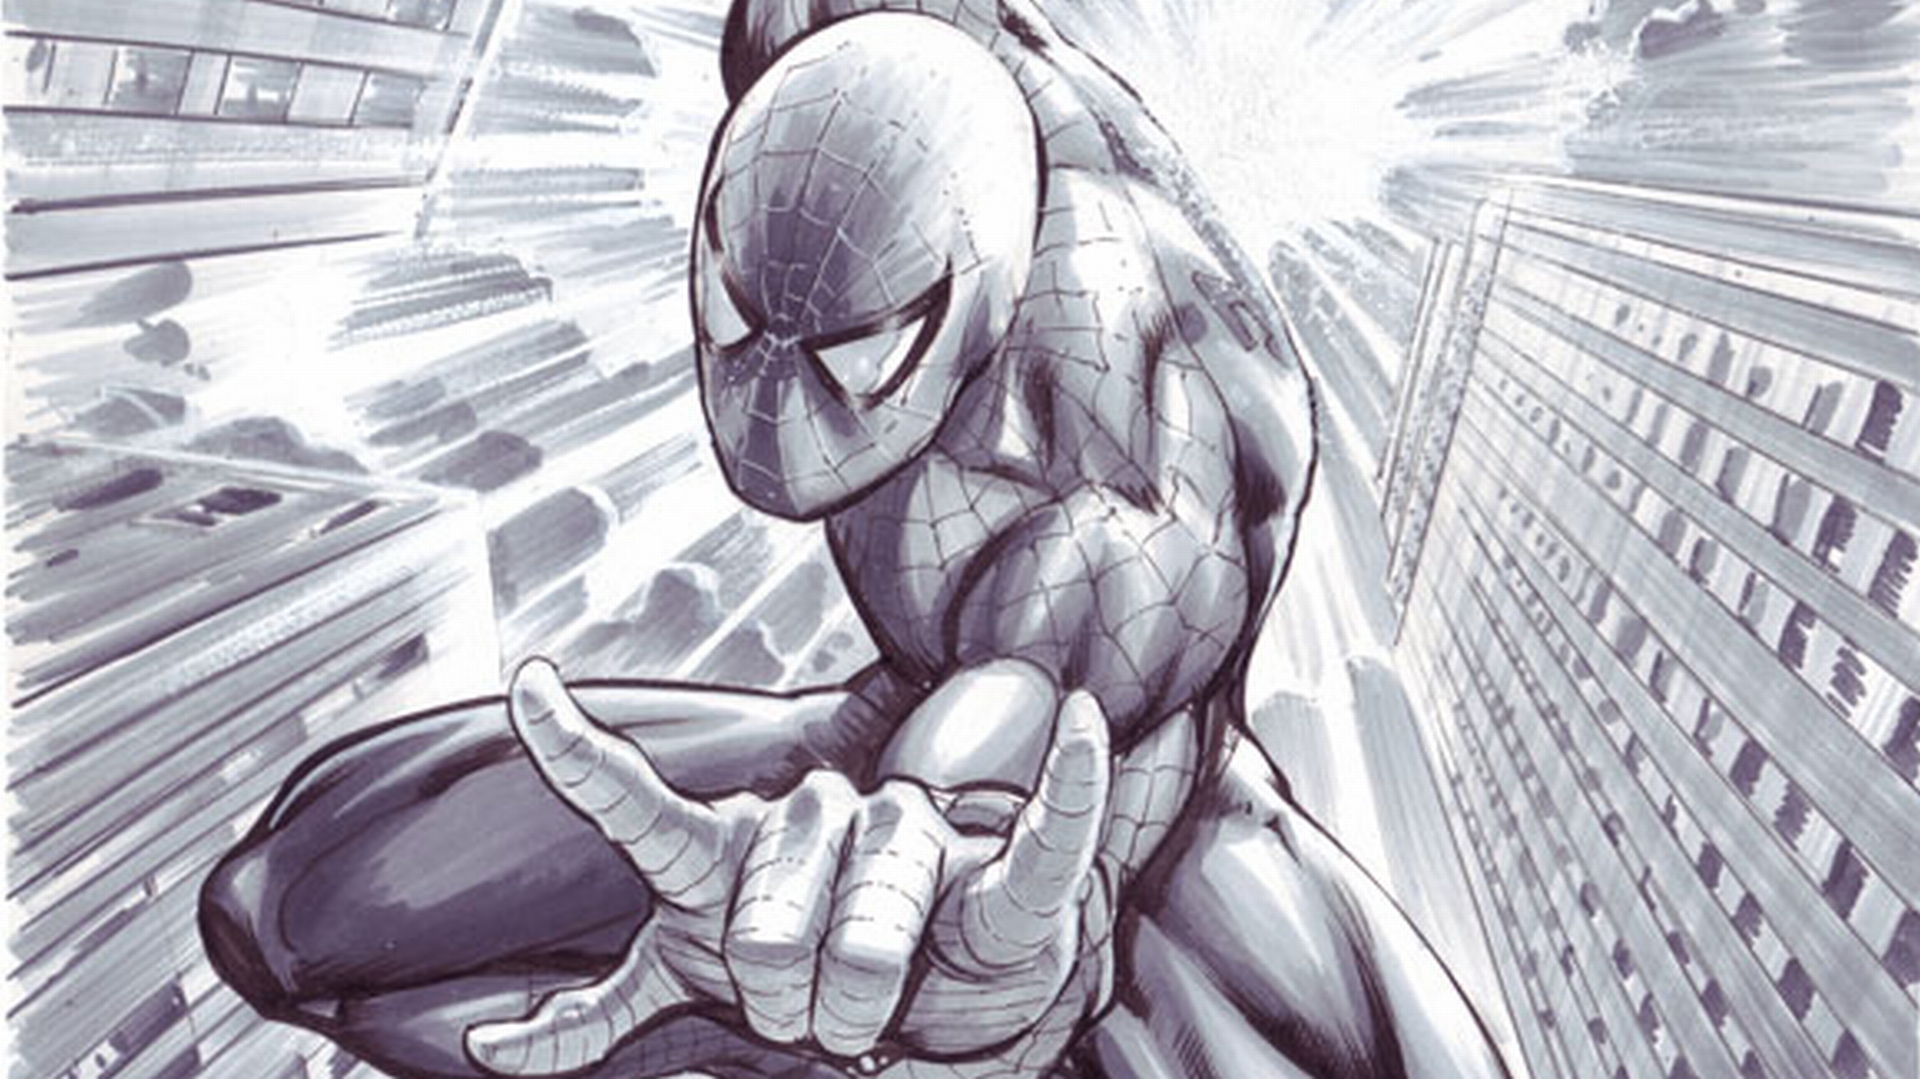 Comics Spider-Man Wallpaper